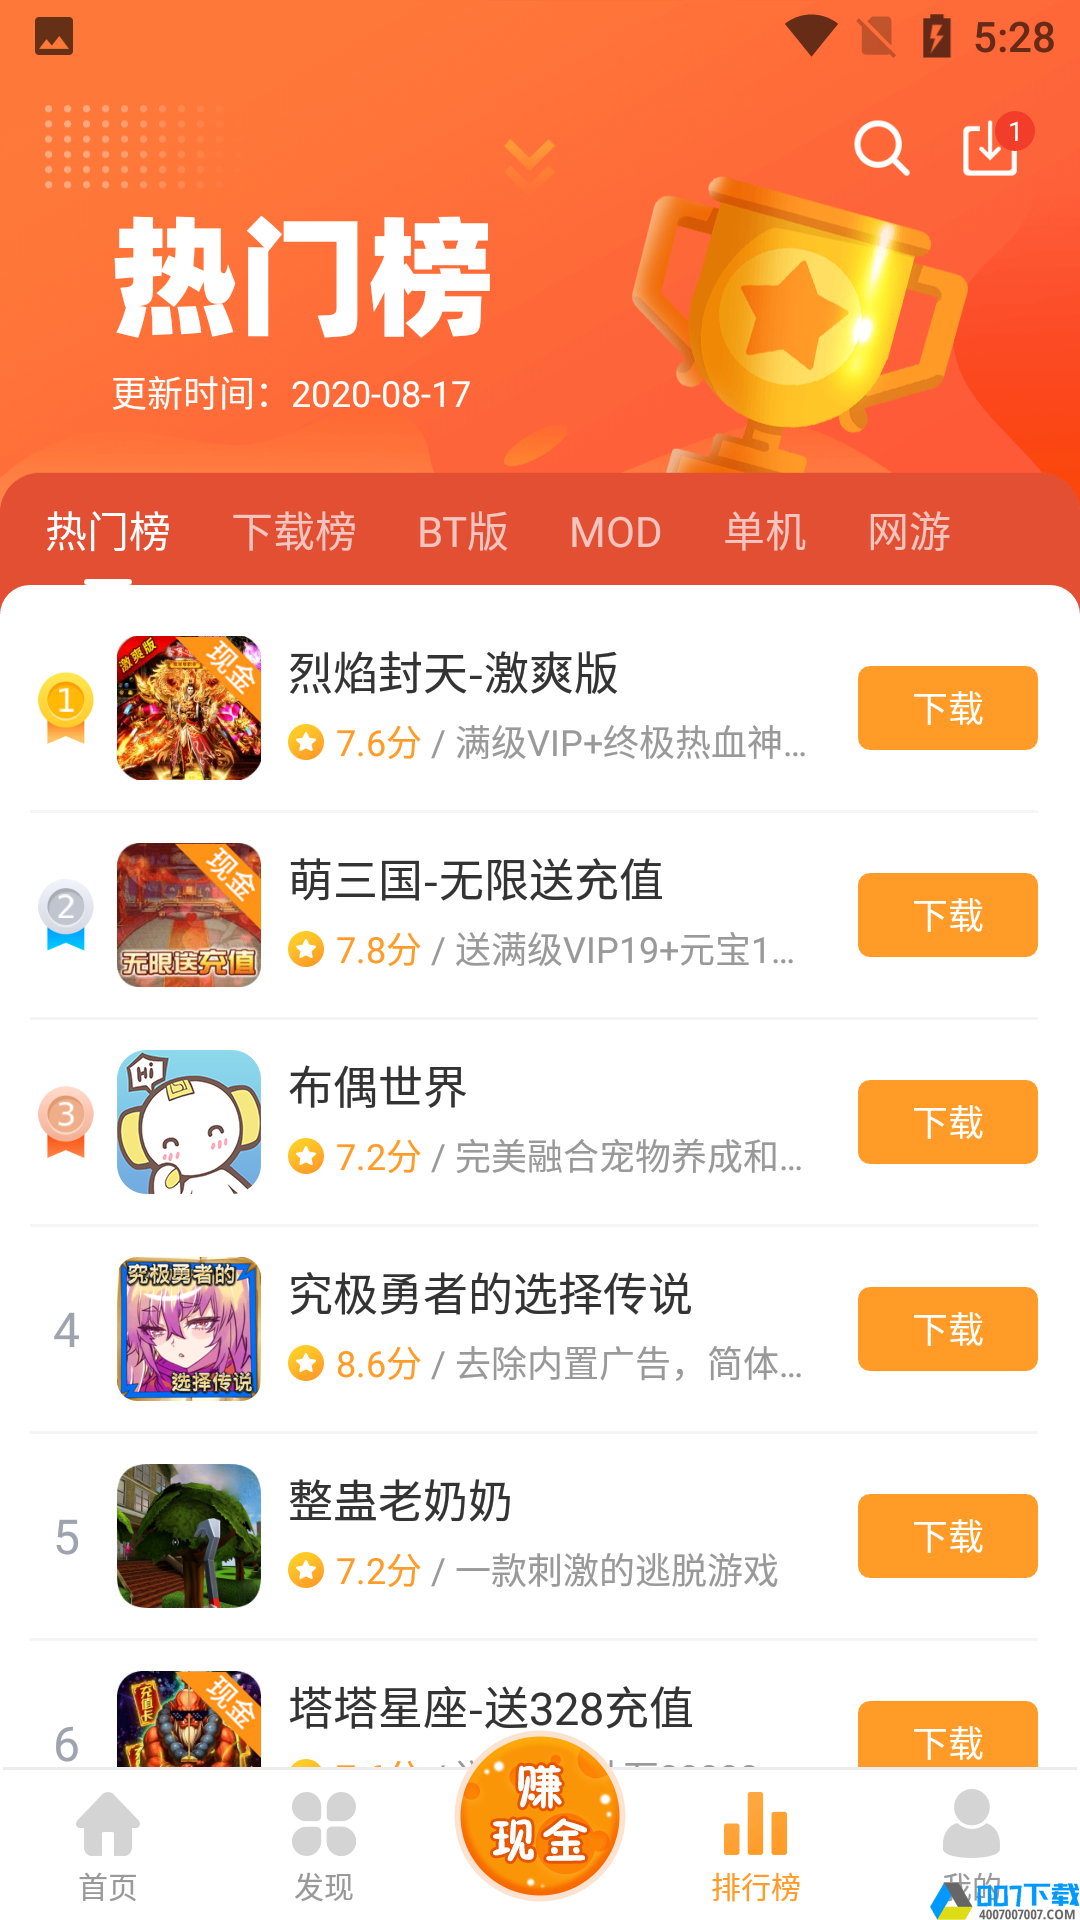 乐乐游戏盒子app下载_乐乐游戏盒子app最新版免费下载